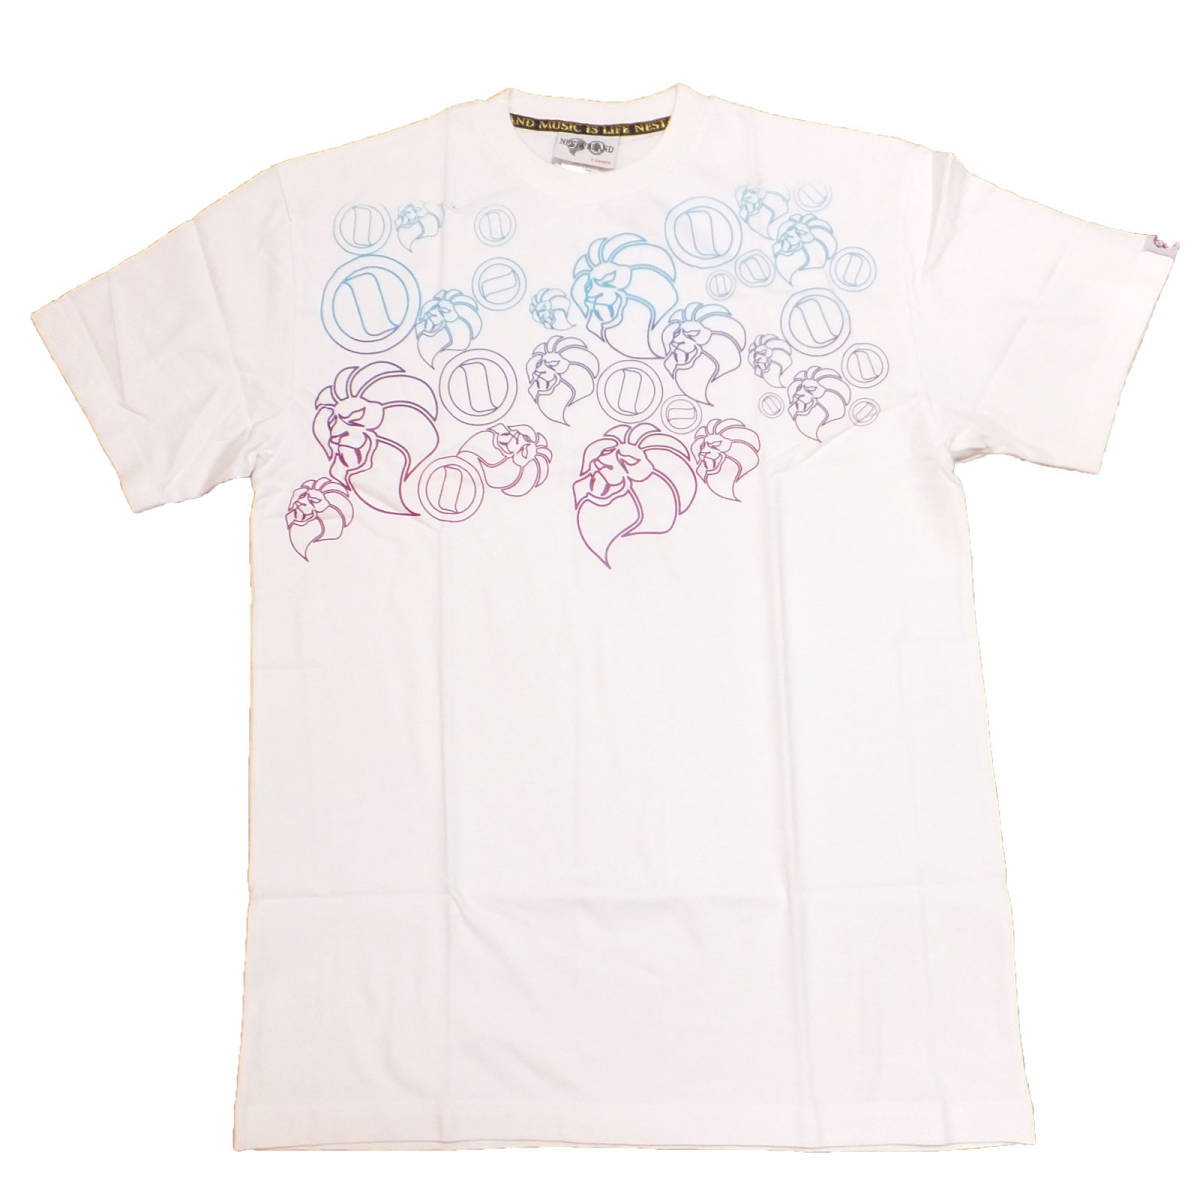 【送料無料】新品NESTA BRAND Tシャツ ネスタブランド正規品W-051 Lサイズ ヘビーウェイトタイプ レゲエ ストリート系 ライオン